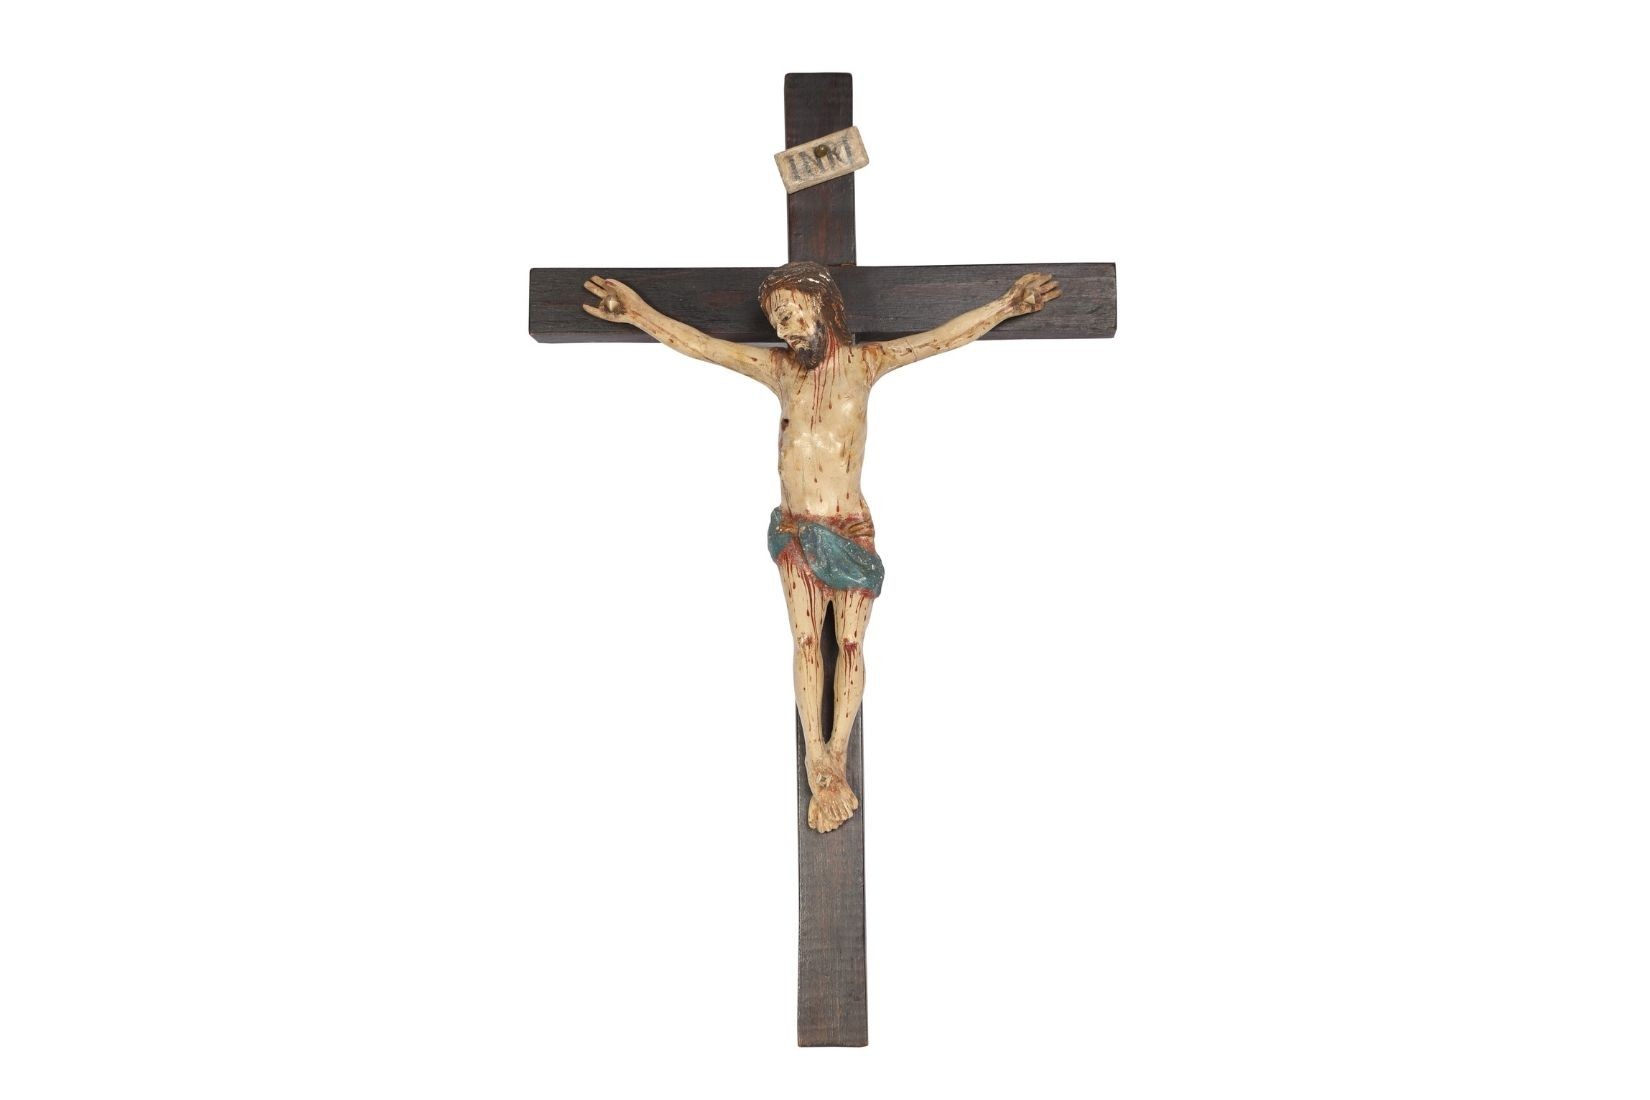 Cristo en madera tallada. Artesano y procedencia desconocidos. Col. Viviana Corcuera, pieza donada a AmigosMAP. (Foto: Vicky Reyes).